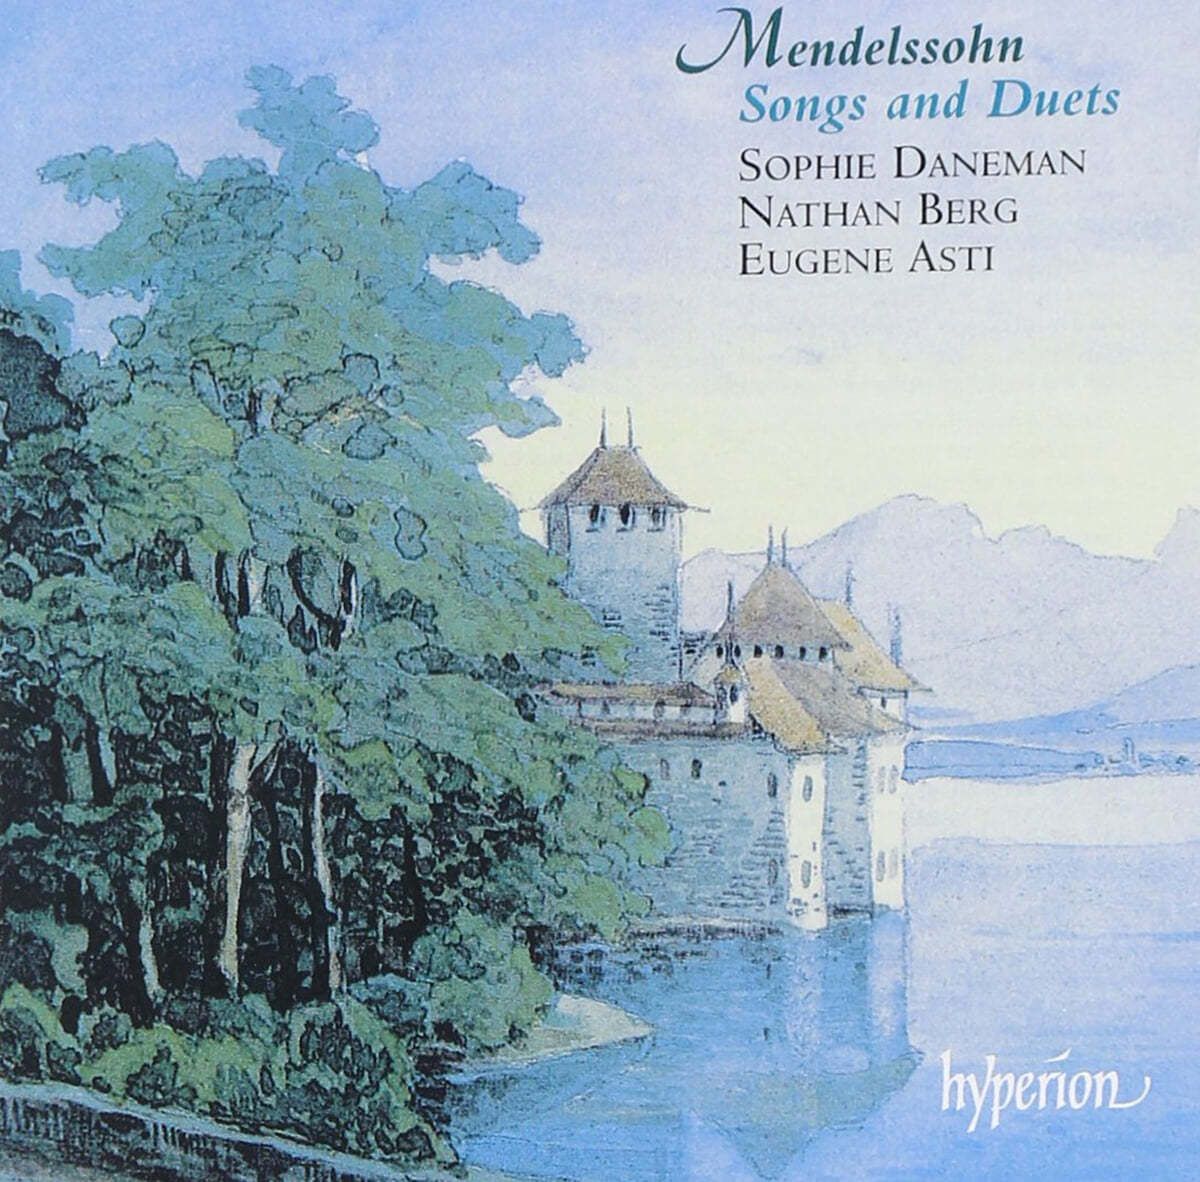 Sophie Daneman 멘델스존: 가곡과 듀엣 (Mendelssohn: Songs and Duets)